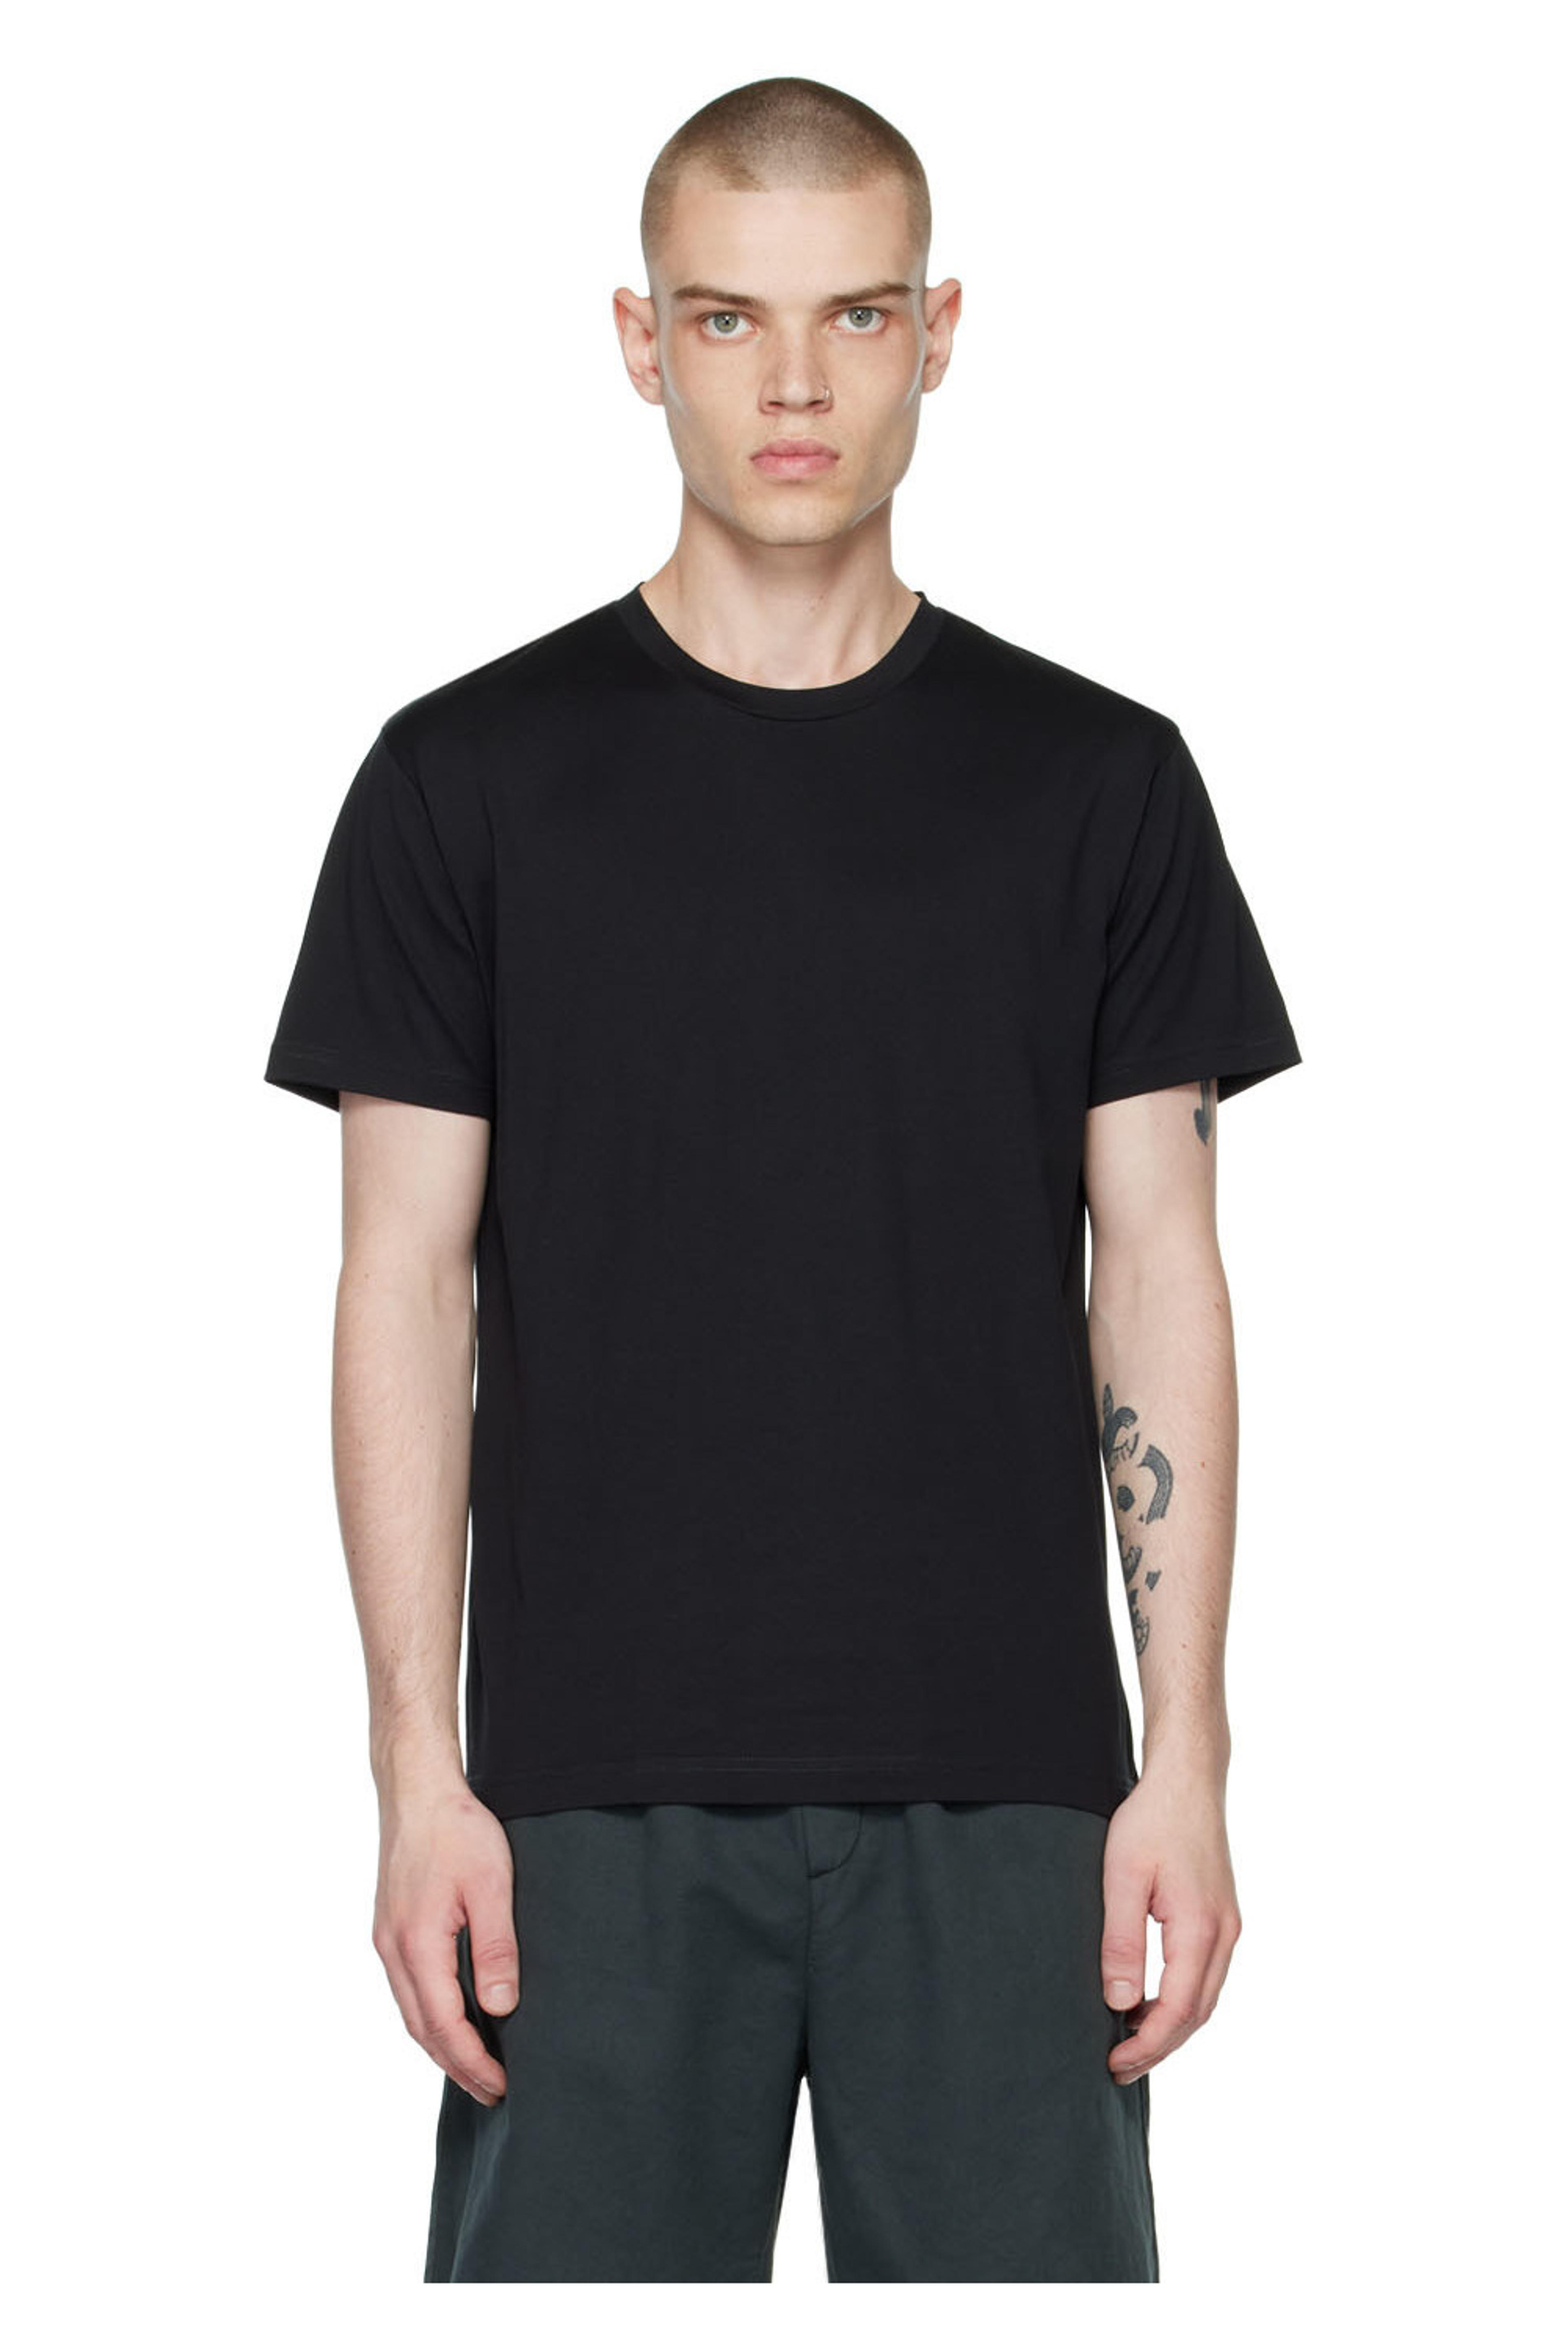 Black Riviera T-Shirt by Sunspel on Sale